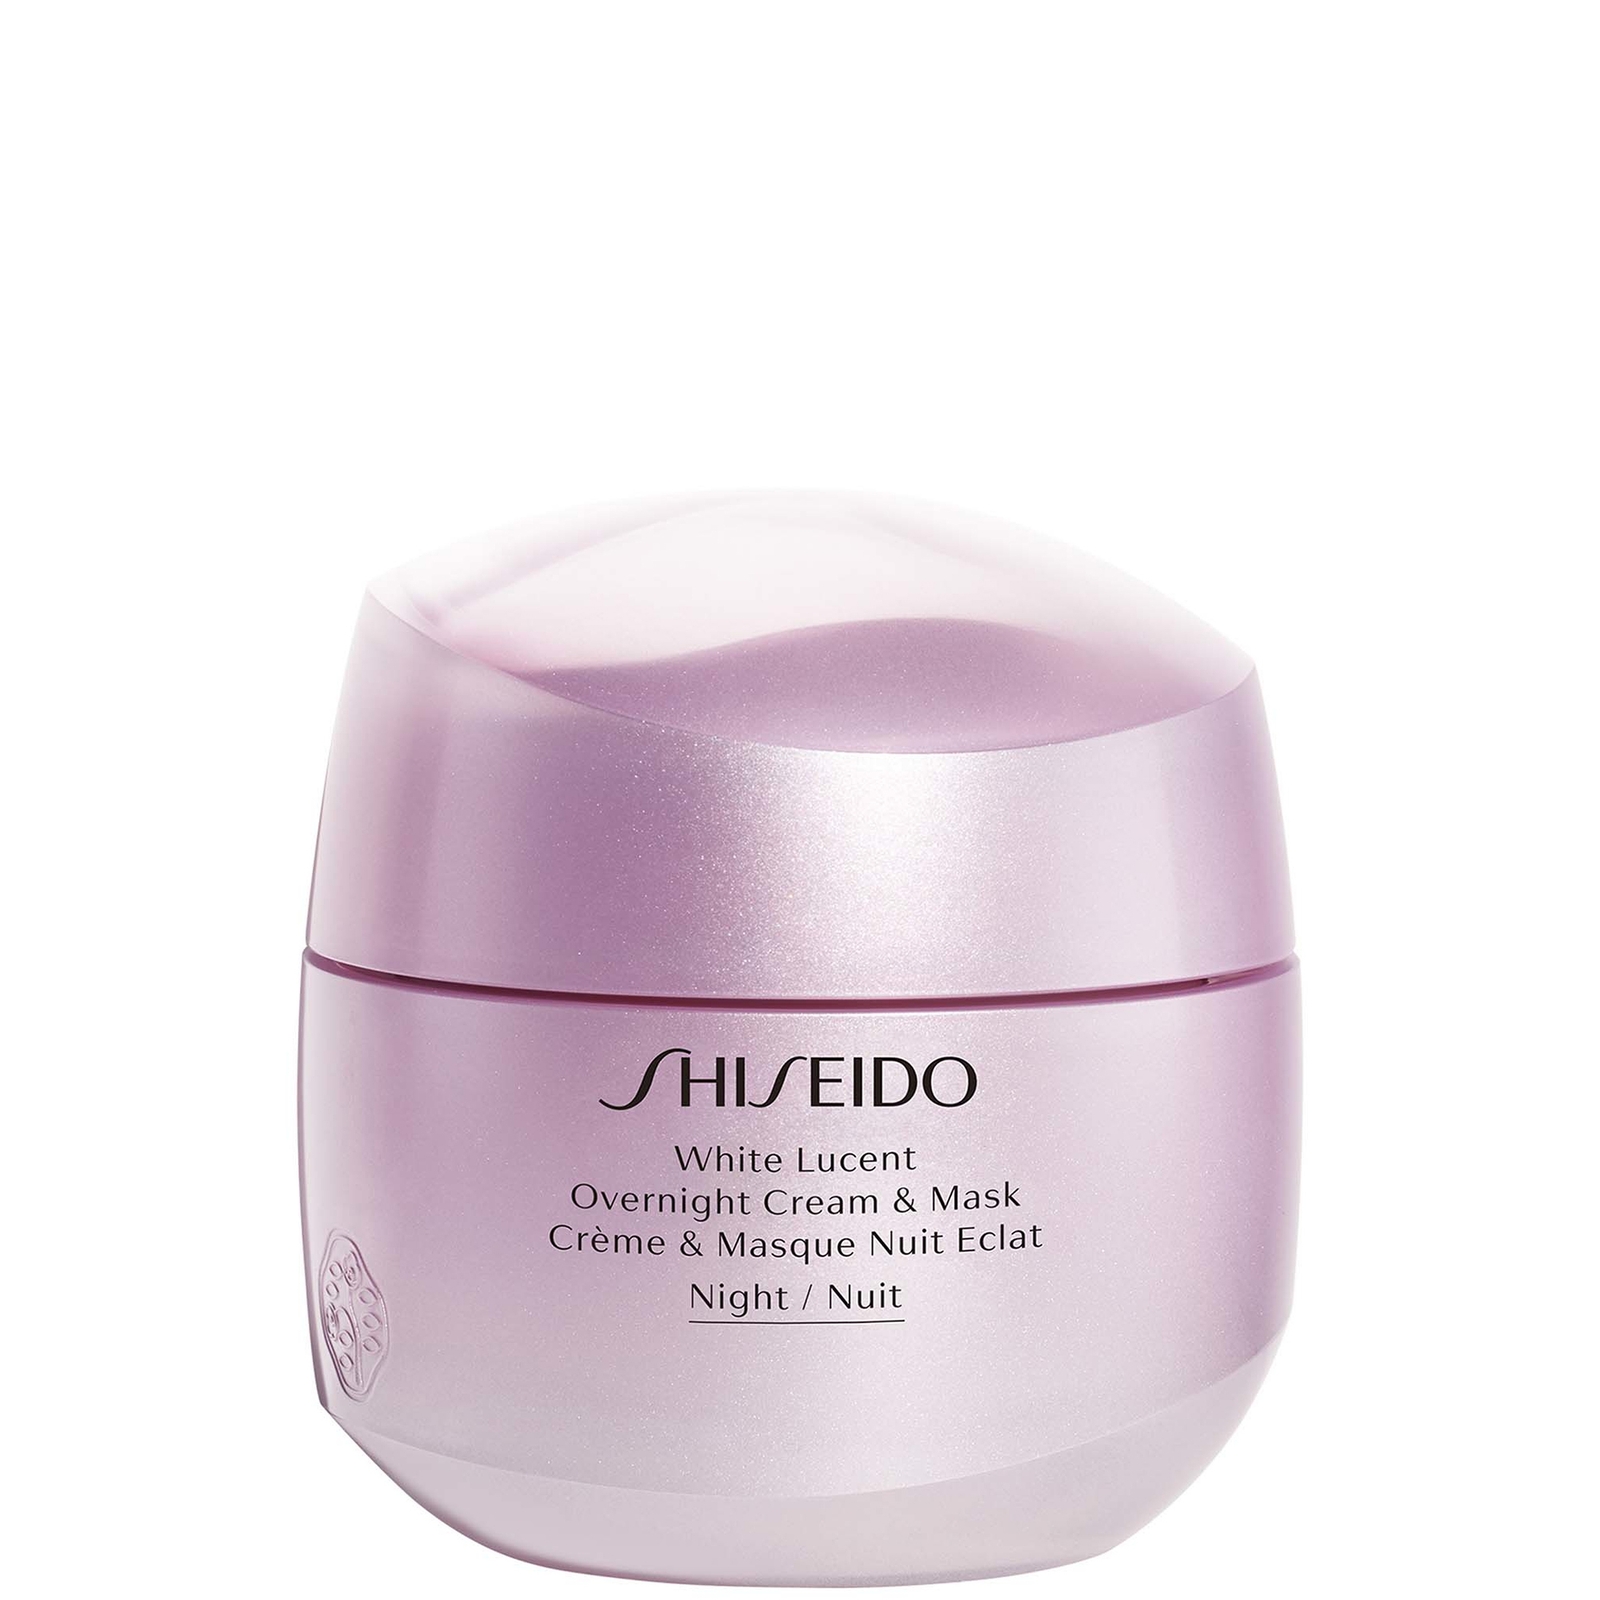 Shiseido White Lucent crema e maschera notte 75ml